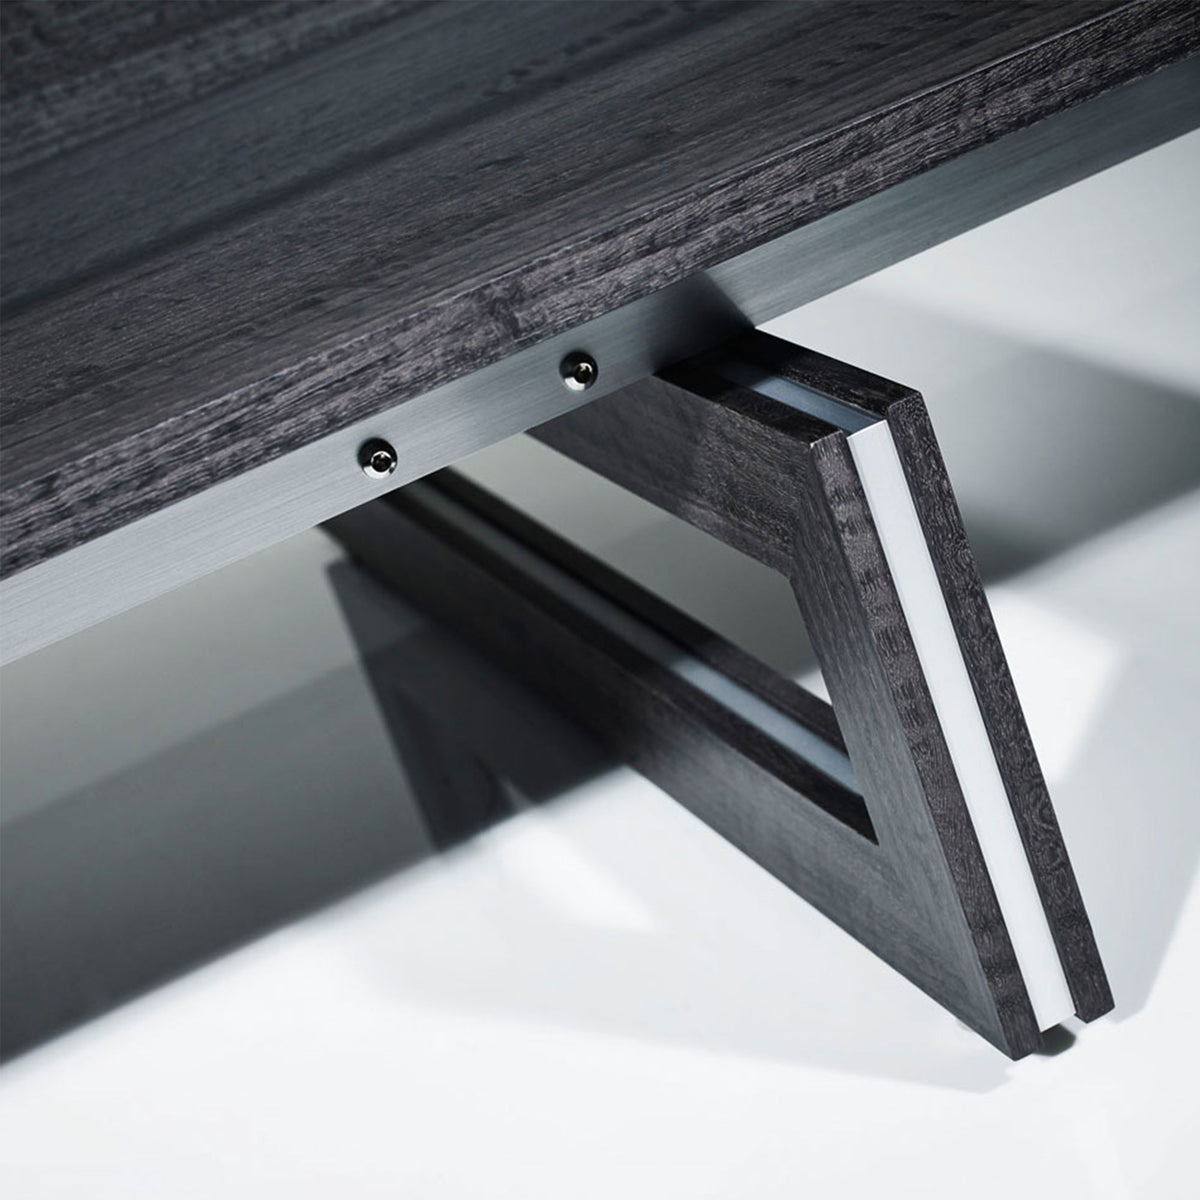 Helix Coffee Table - Grey Eucalyptus | Bespoke Design & Luxury Furniture | LINLEY